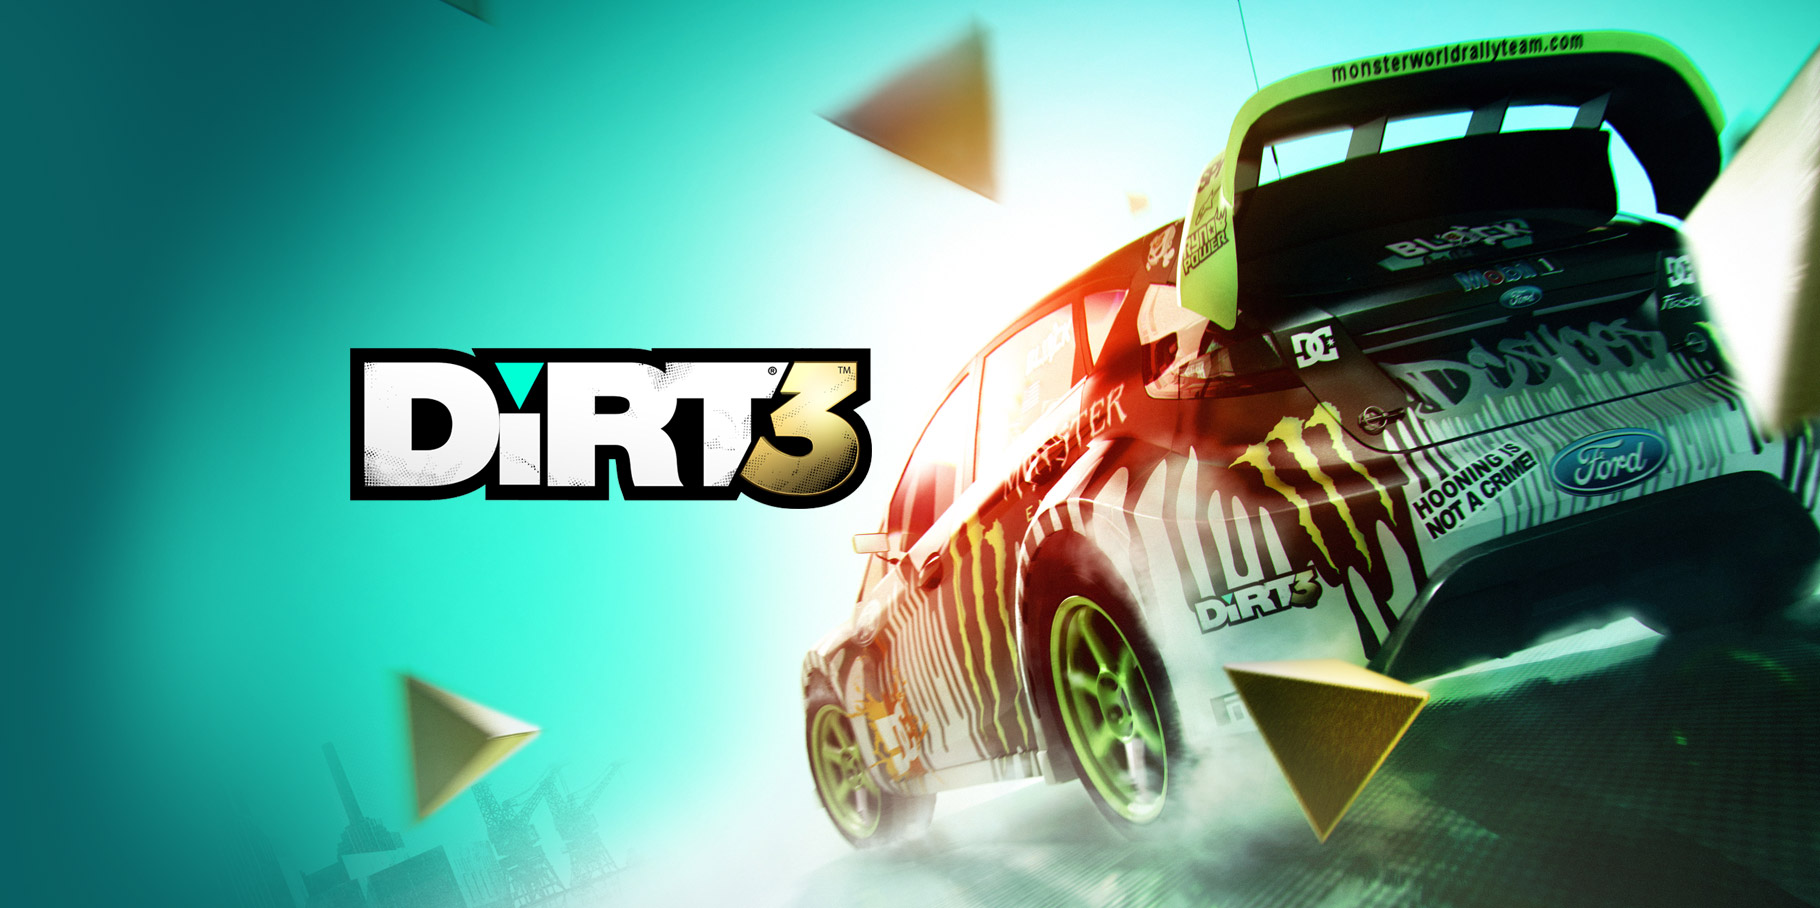 Dirt 3 Mobile Game Full Version Download